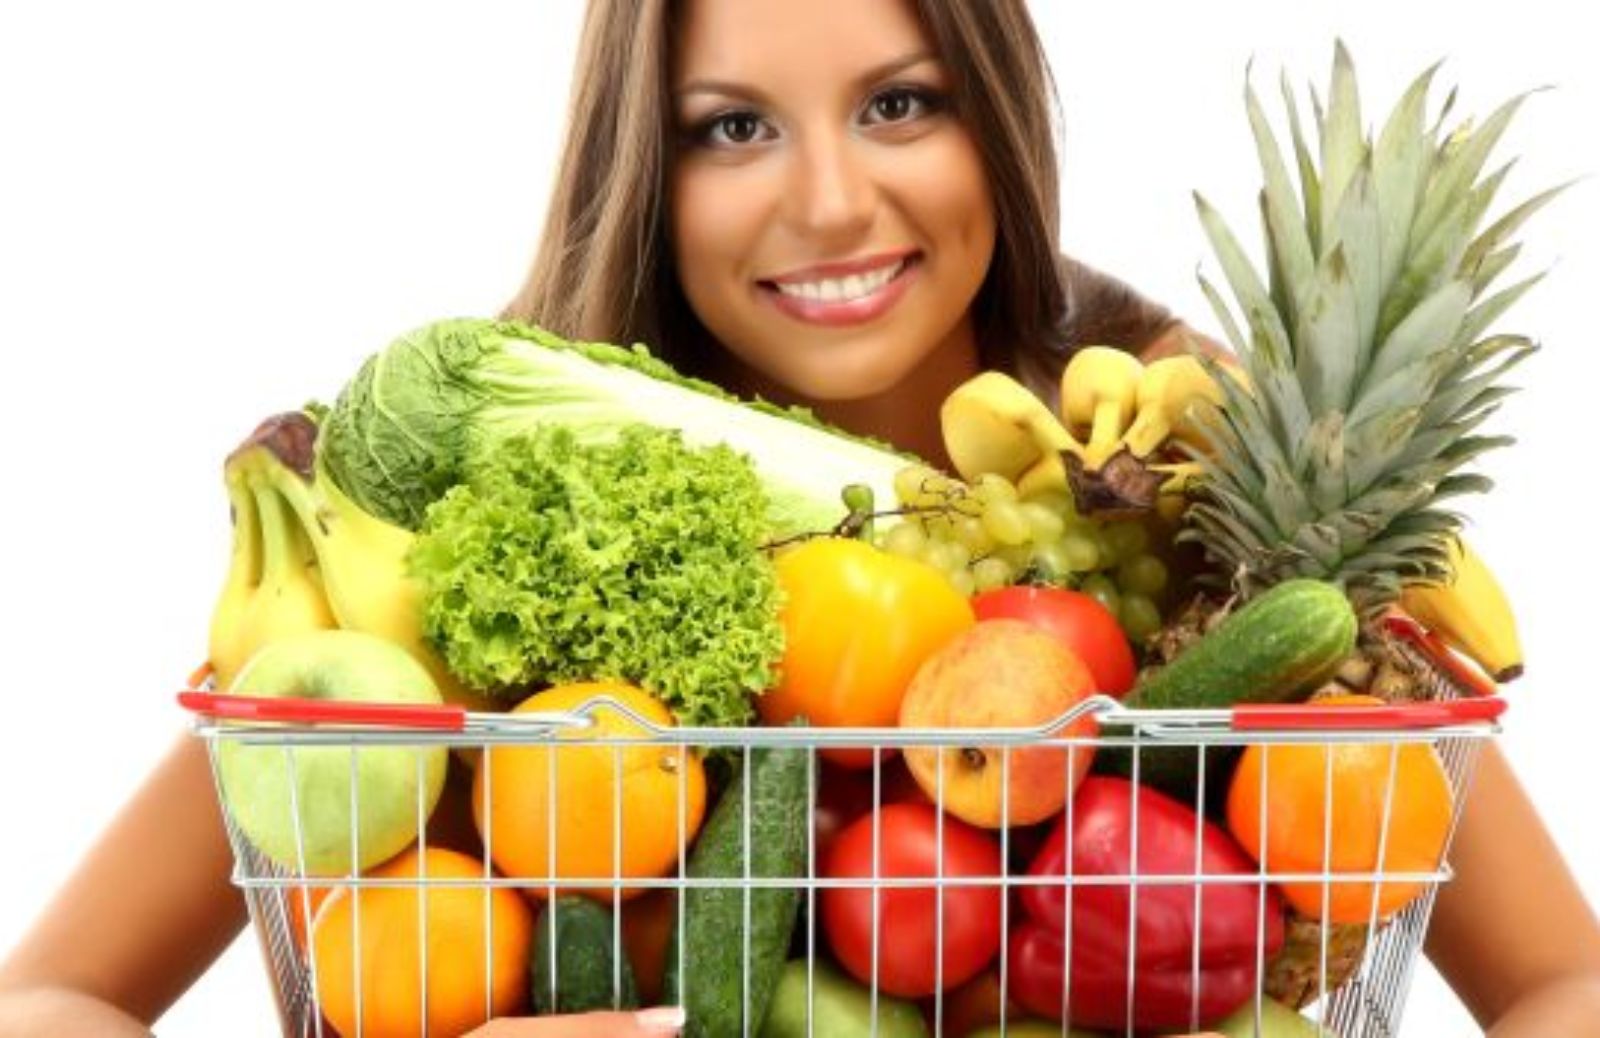 Al supermercato: la spesa nel reparto frutta e verdura